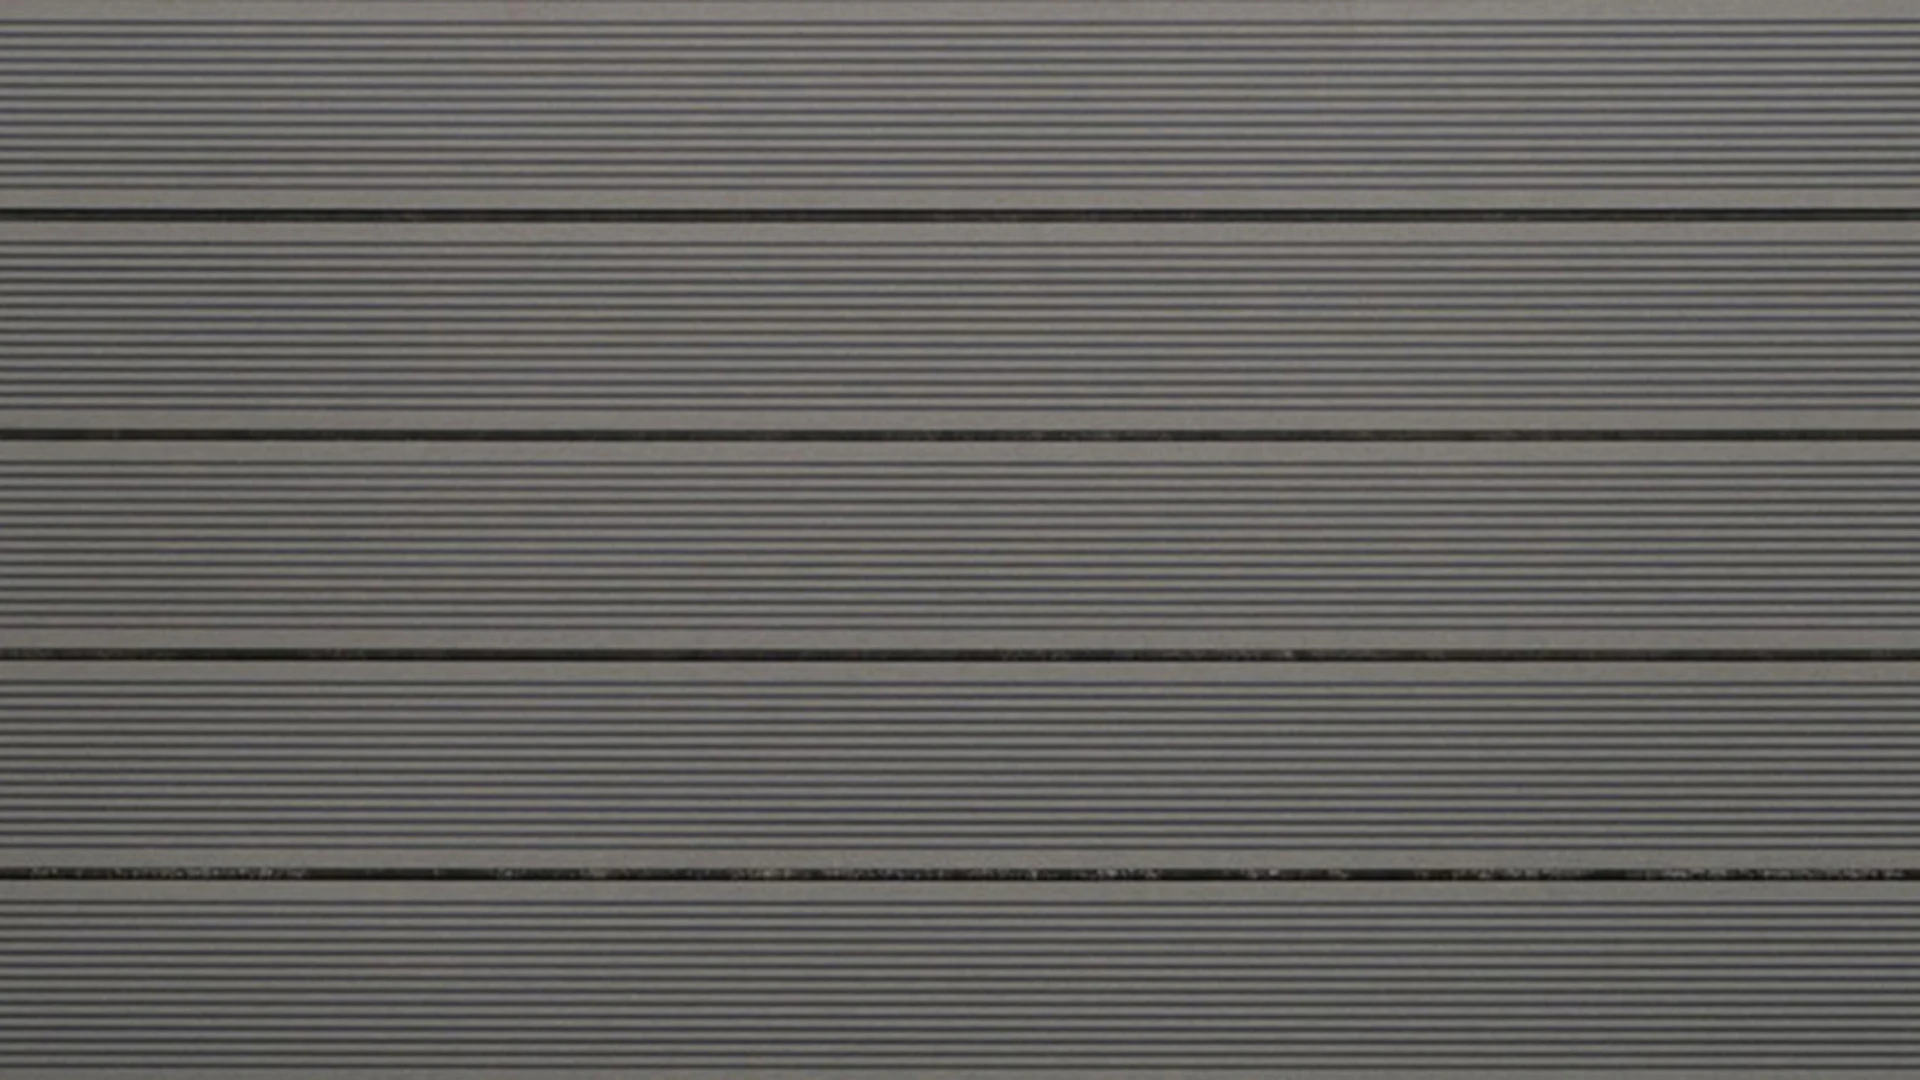 planeo WPC decking board solido grigio chiaro - scanalato/scanalato